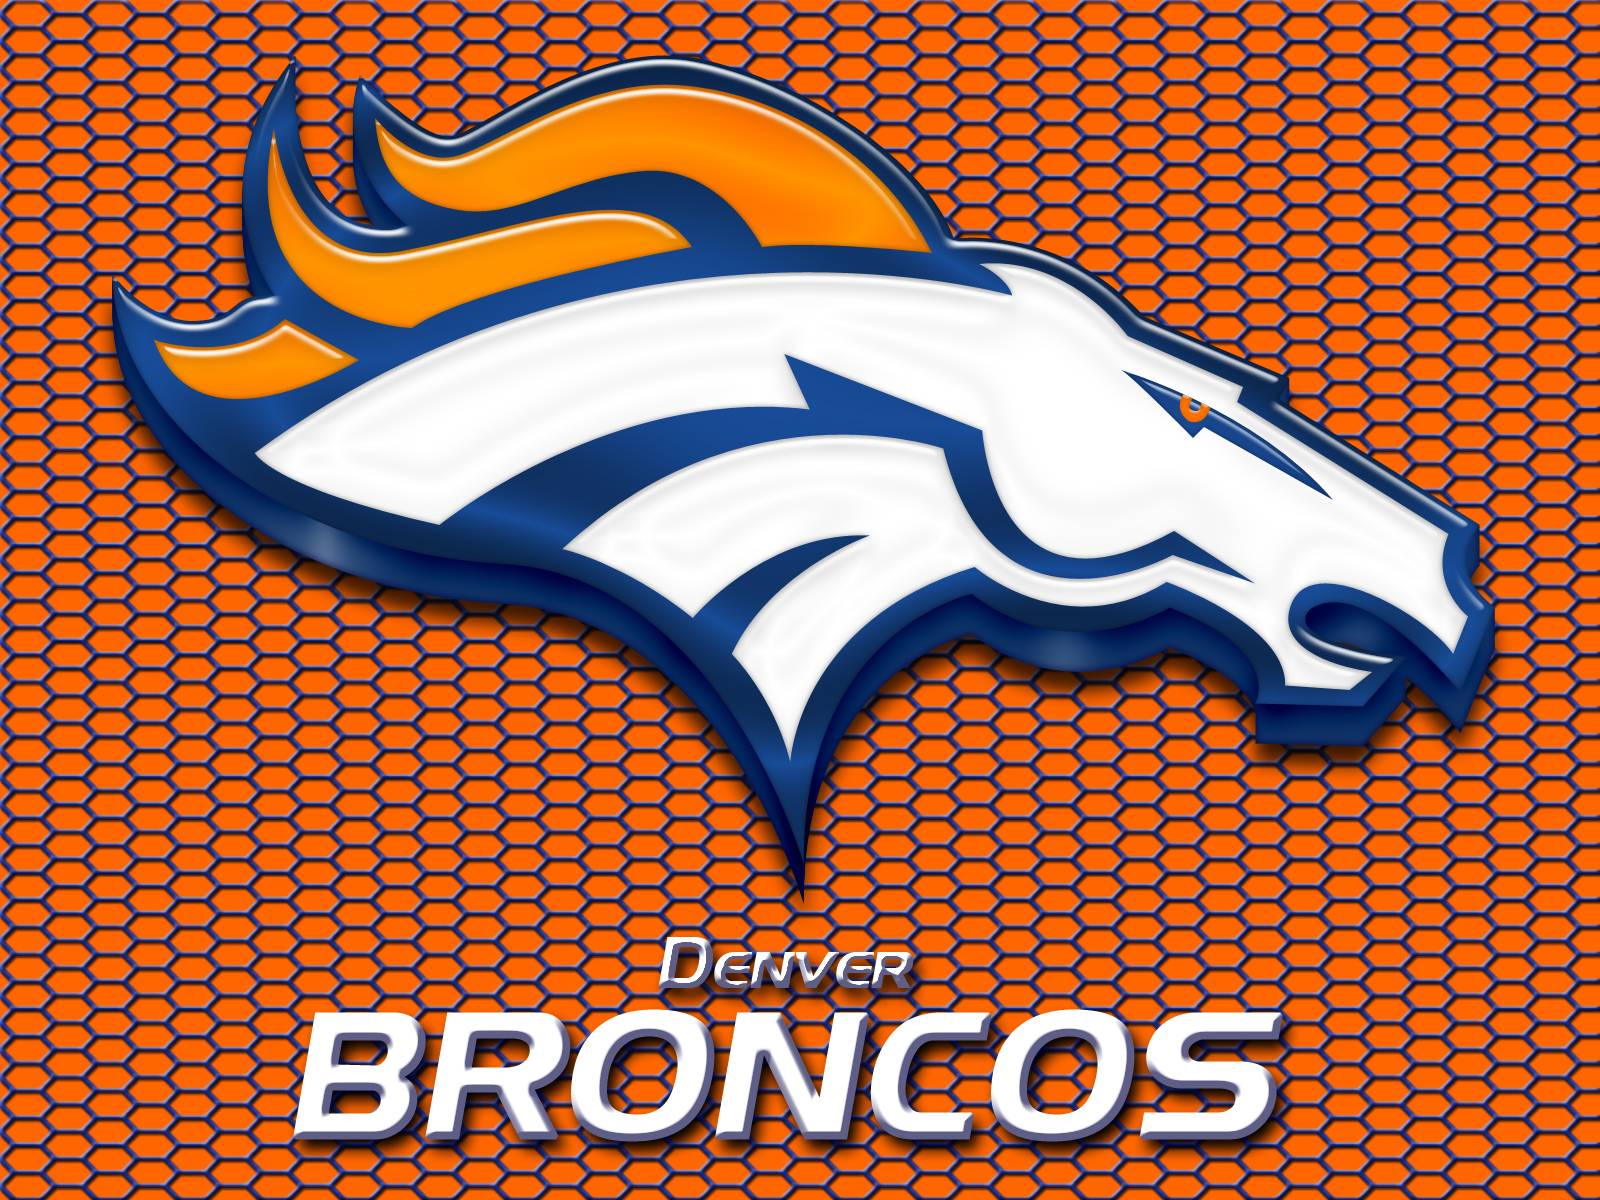 Free Denver Broncos backgrounds image